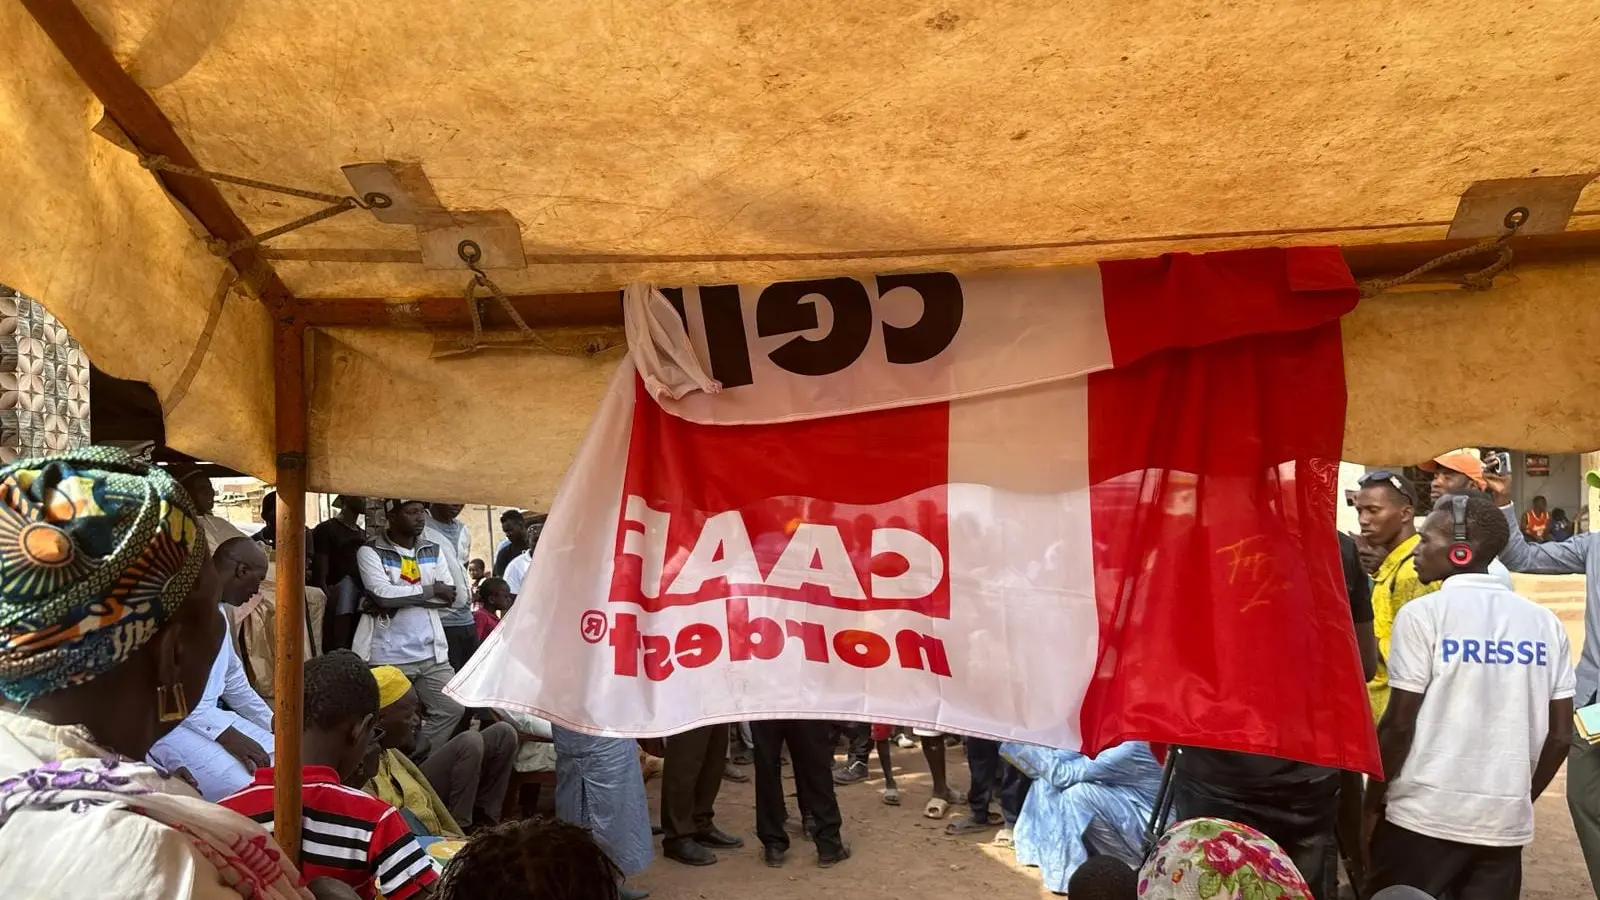 Solidarietà: Caaf Cgil Nord Est dona un’ambulanza in Senegal